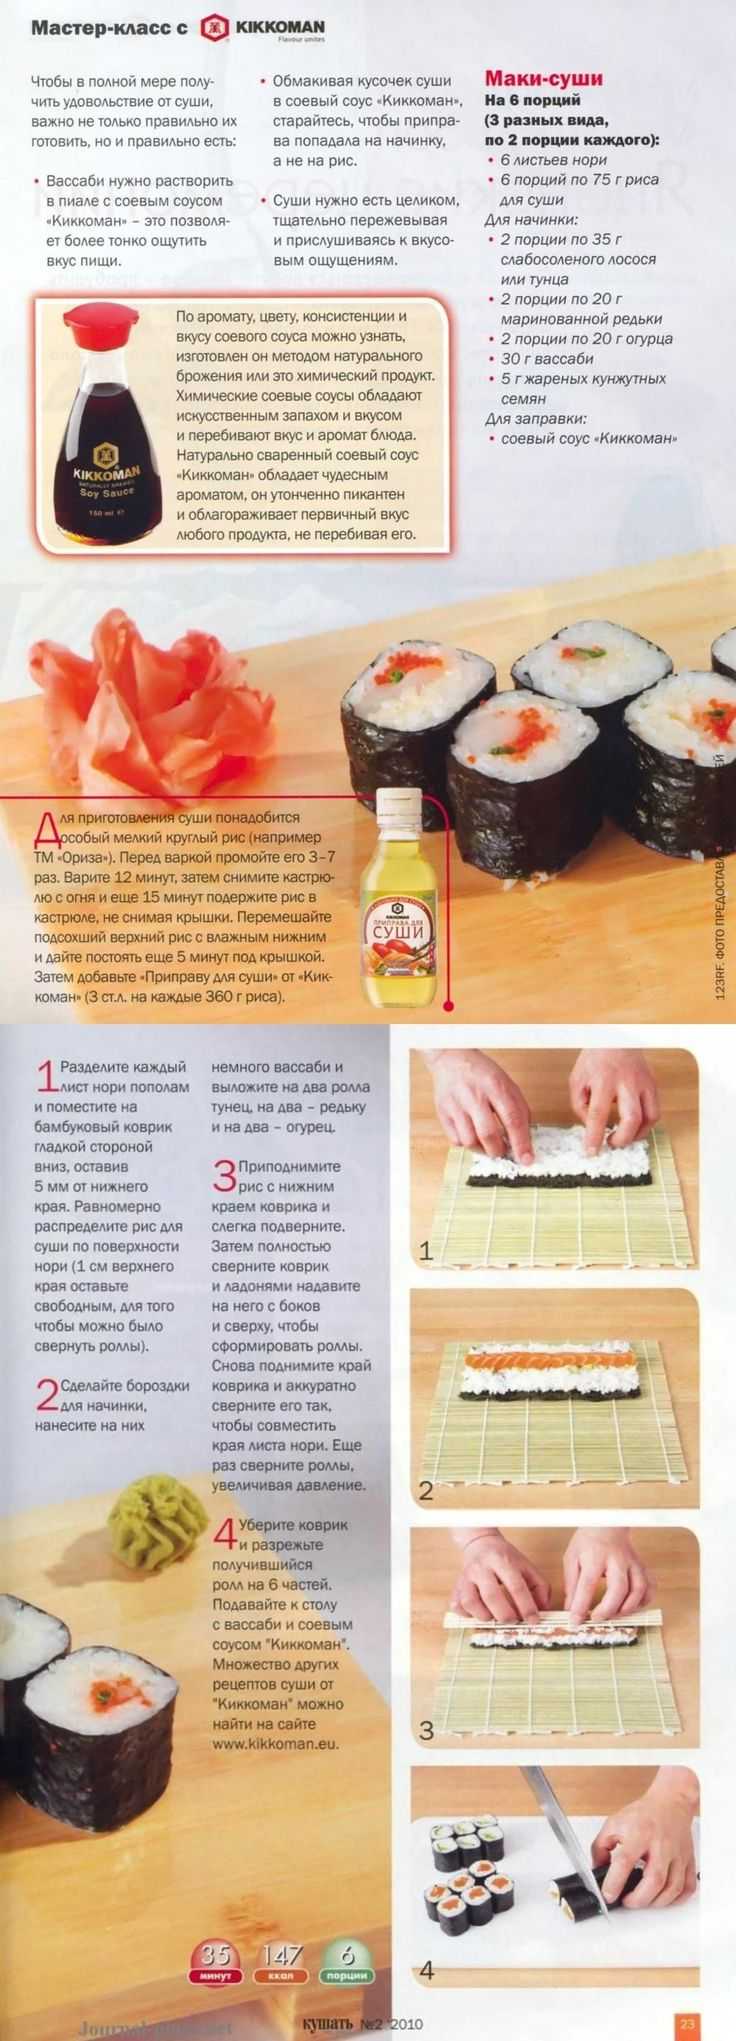 Вкусные суши дома своими руками простые рецепты (120) фото